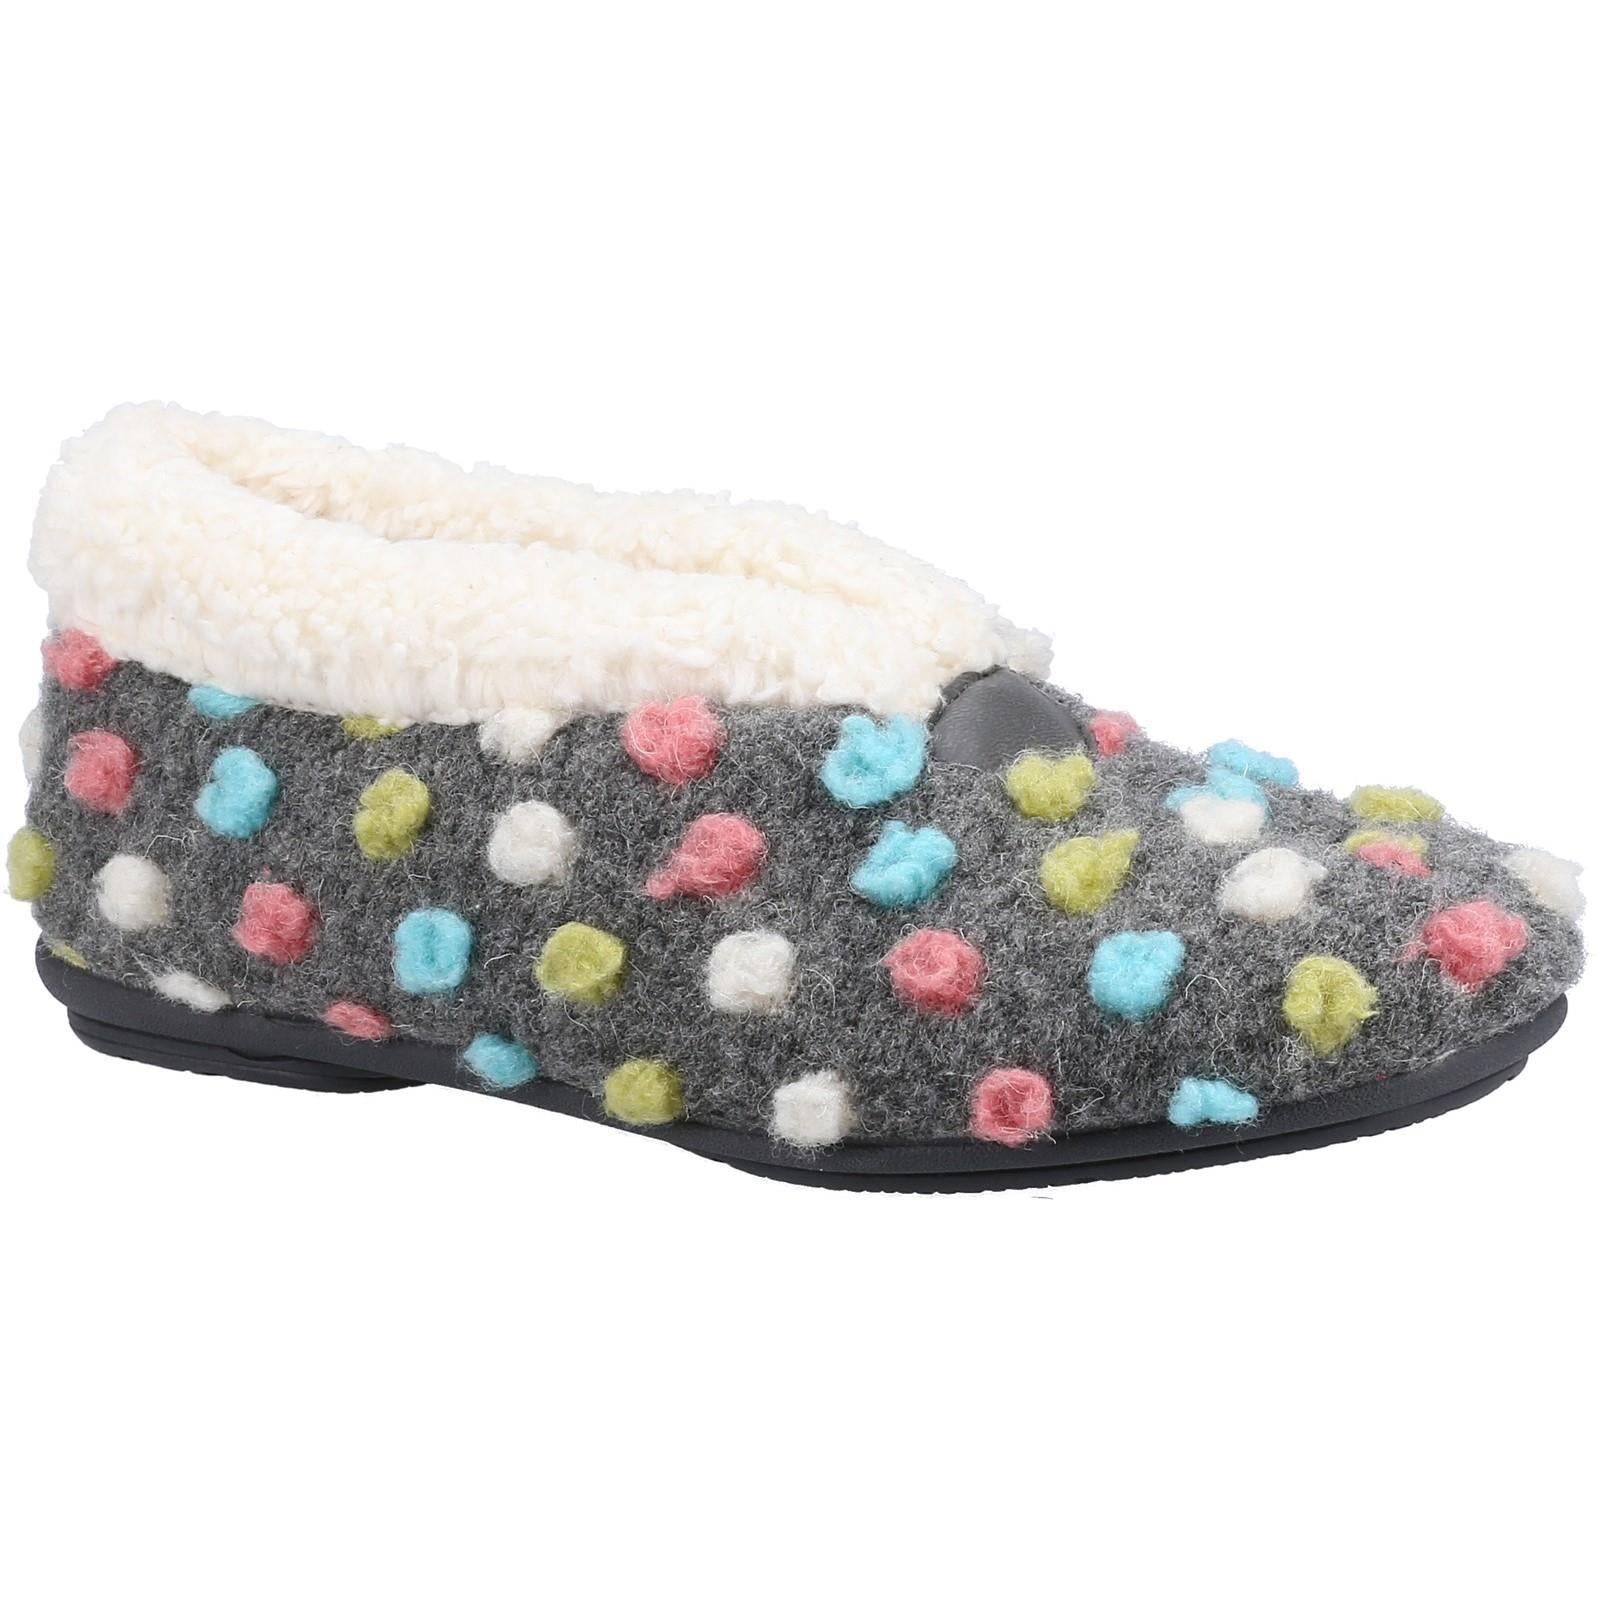 Fleet & Foster Snowberry grey decorative polka dot stretch upper ladies slipper